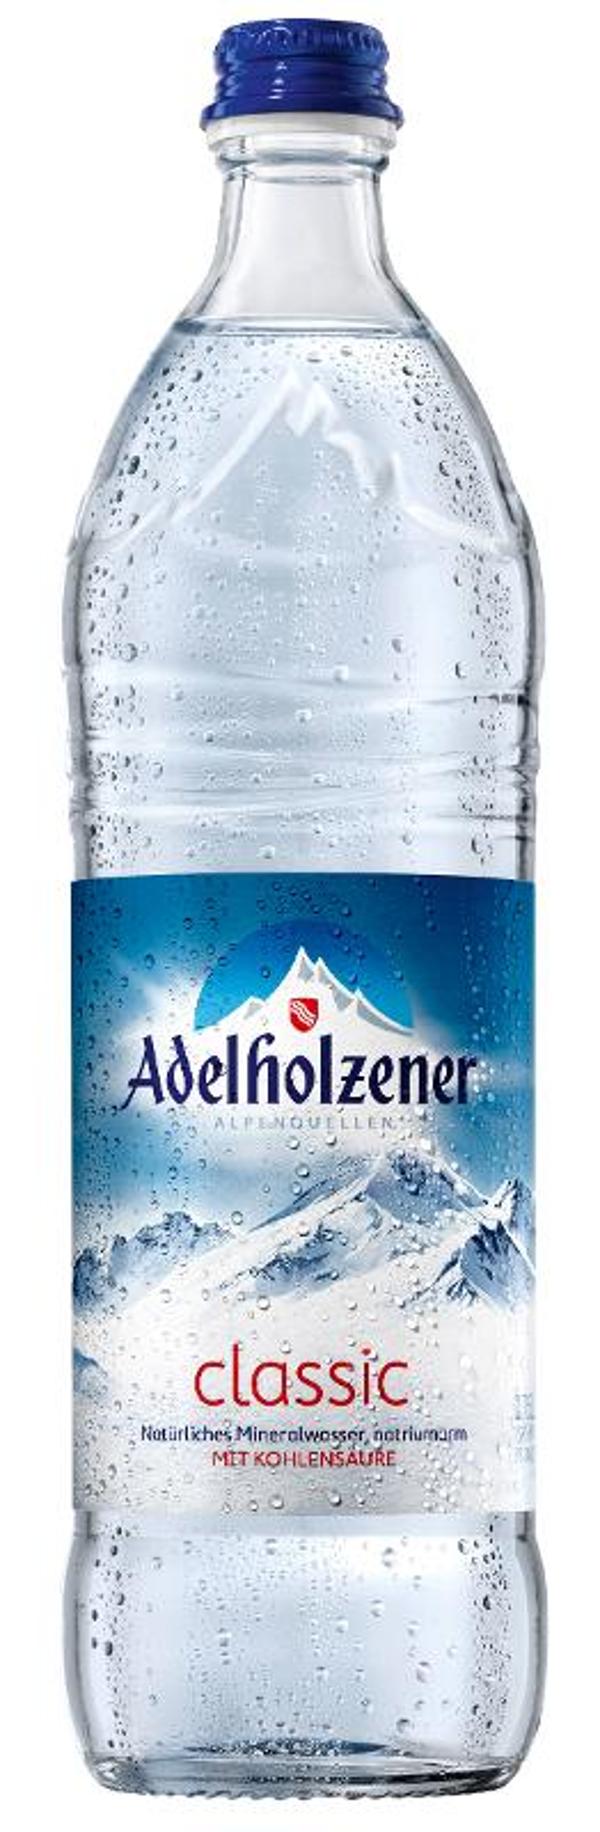 Produktfoto zu VPE Wasser Classic 12x 0,75 Glas Adelholzener Alpenquelle